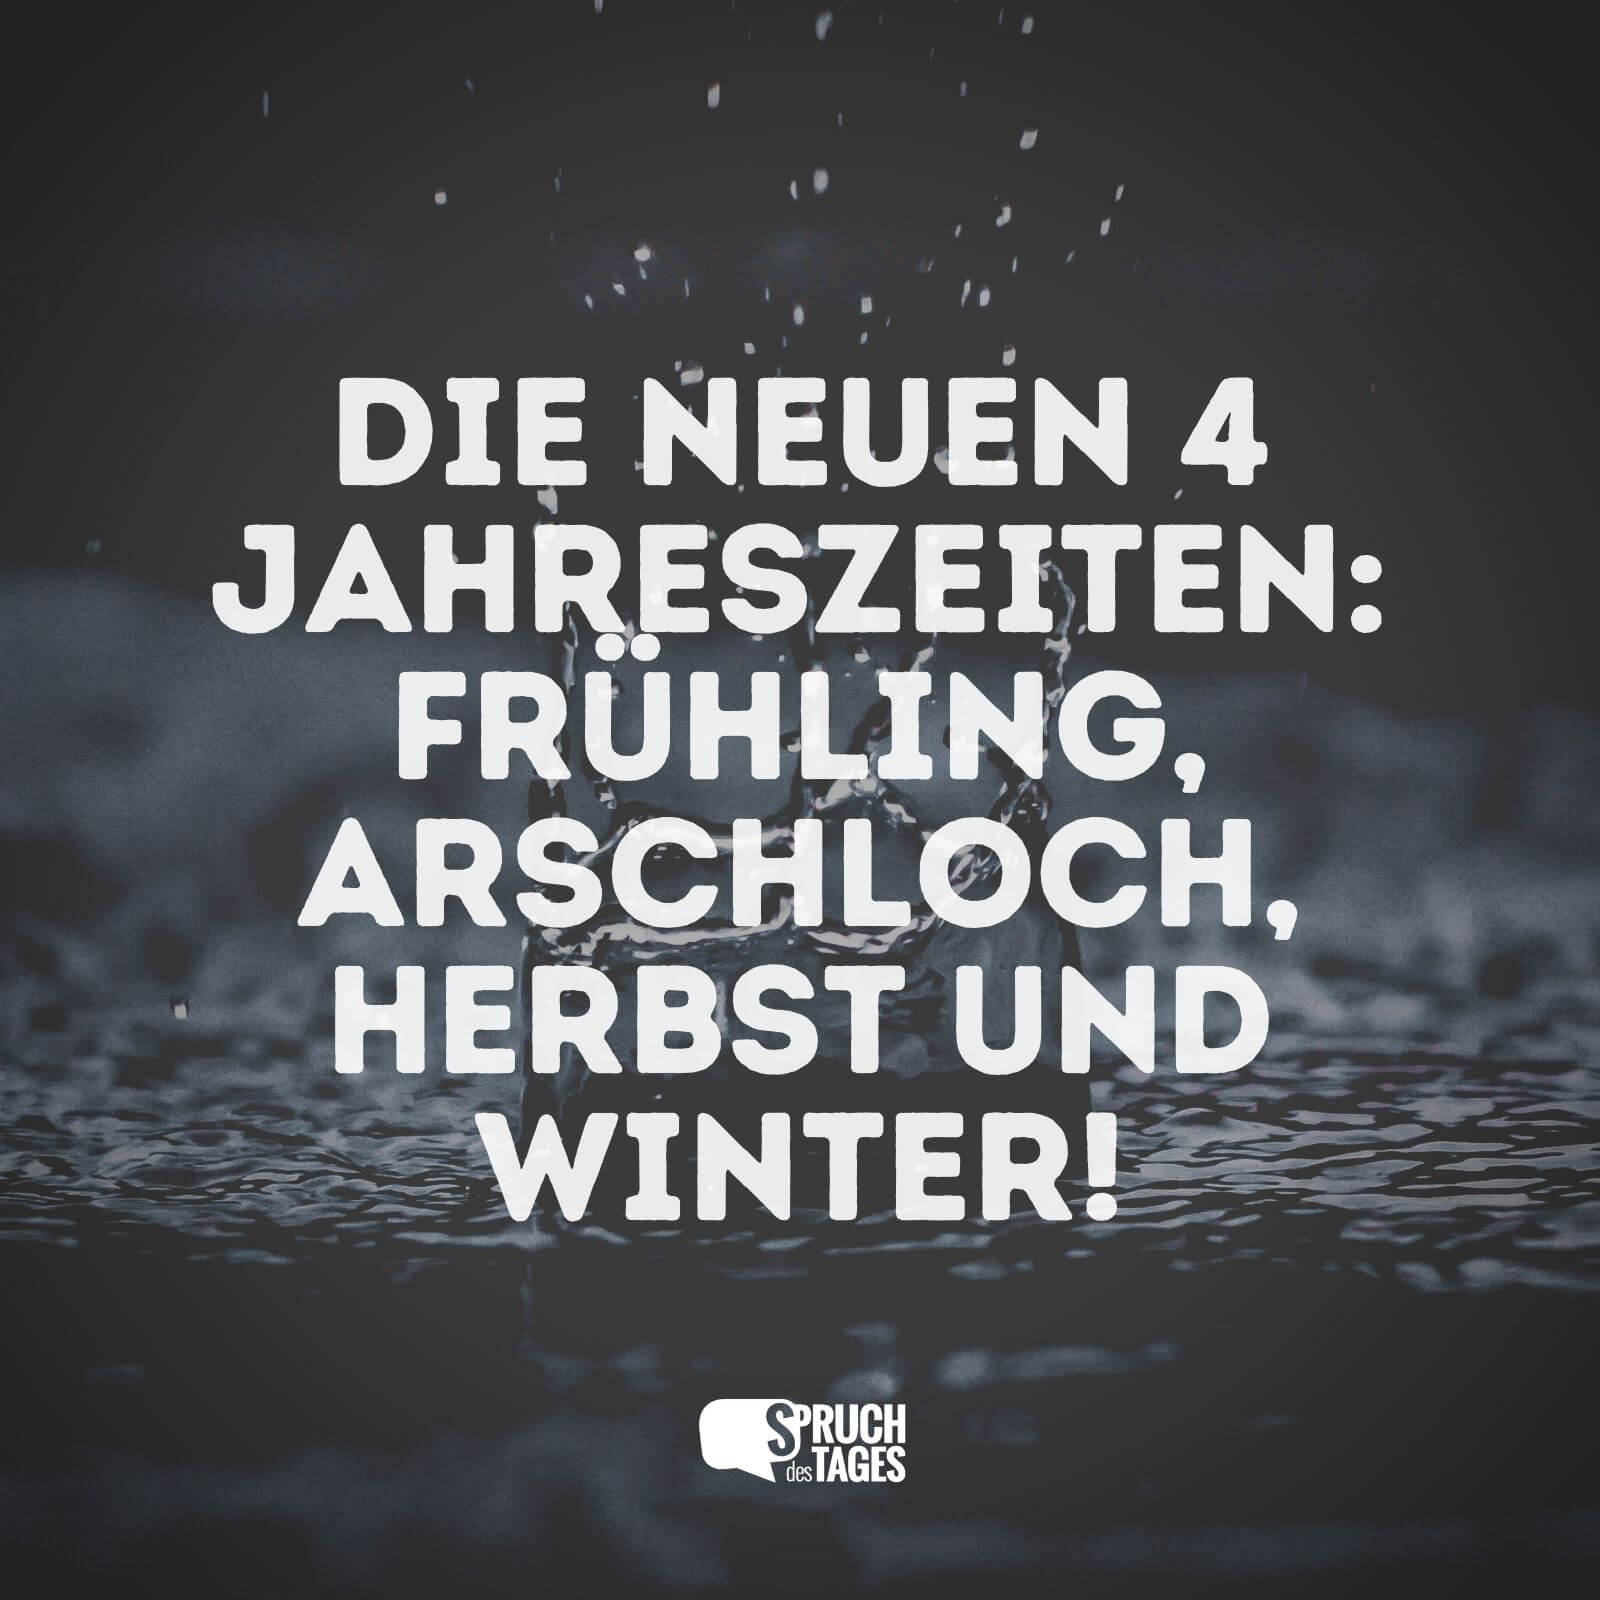 Die neuen 4 Jahreszeiten: Frühling, Arschloch, Herbst und Winter!